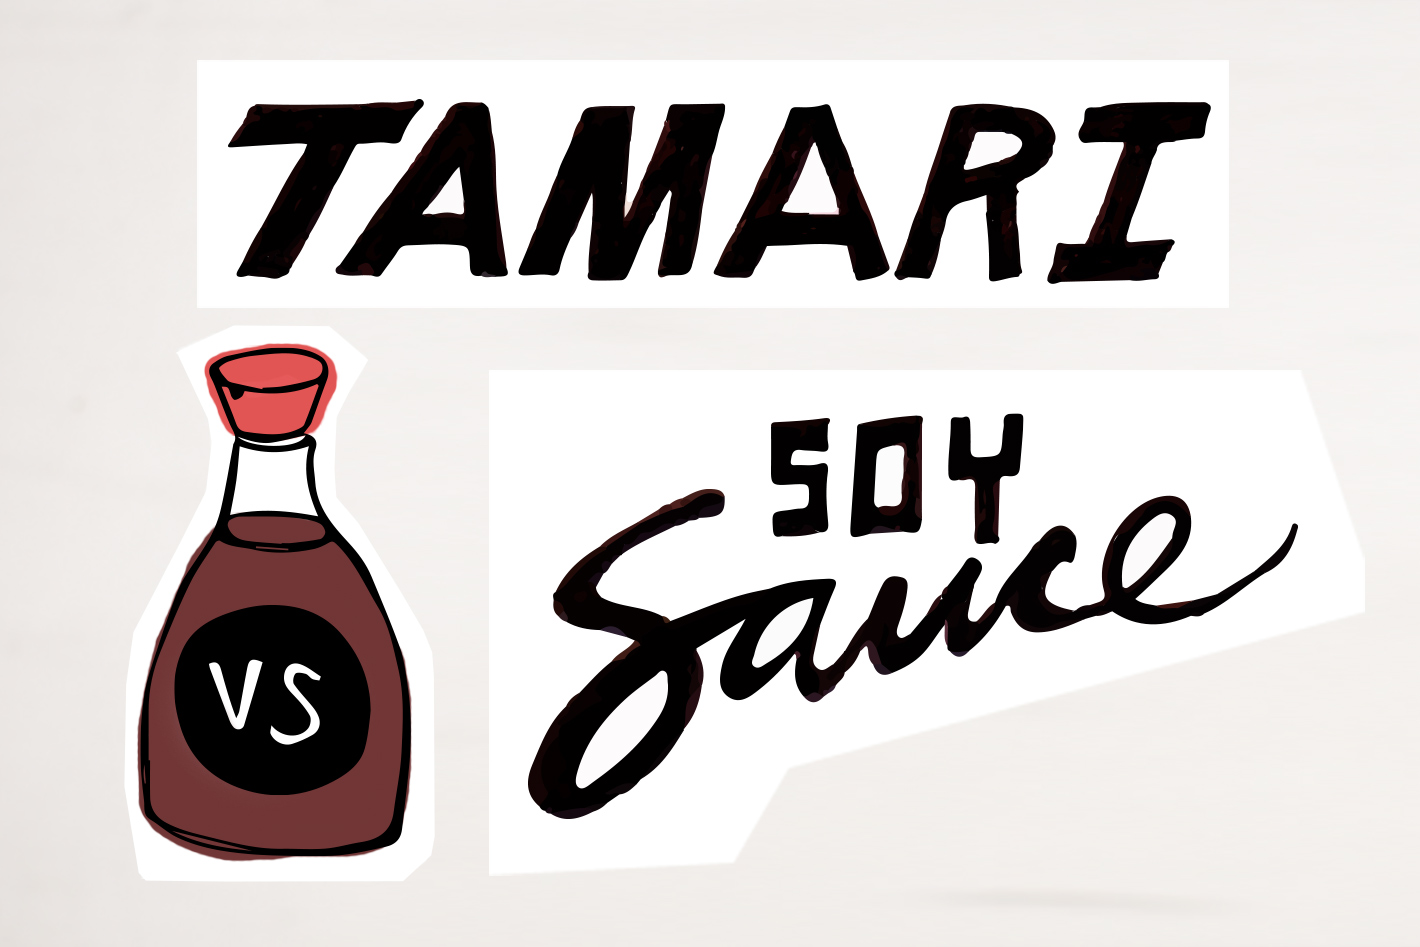 What is tamari? vs. soy sauce?